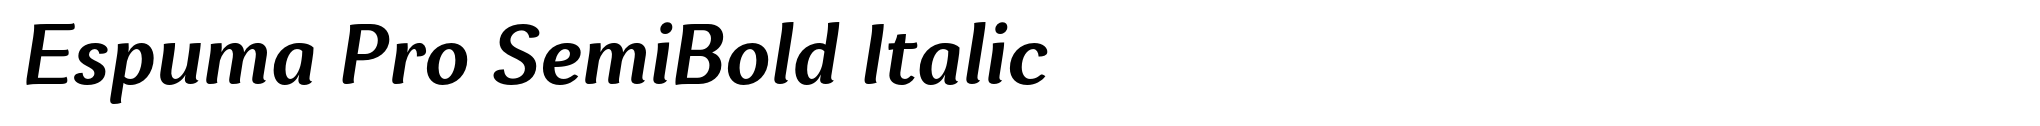 Espuma Pro SemiBold Italic image